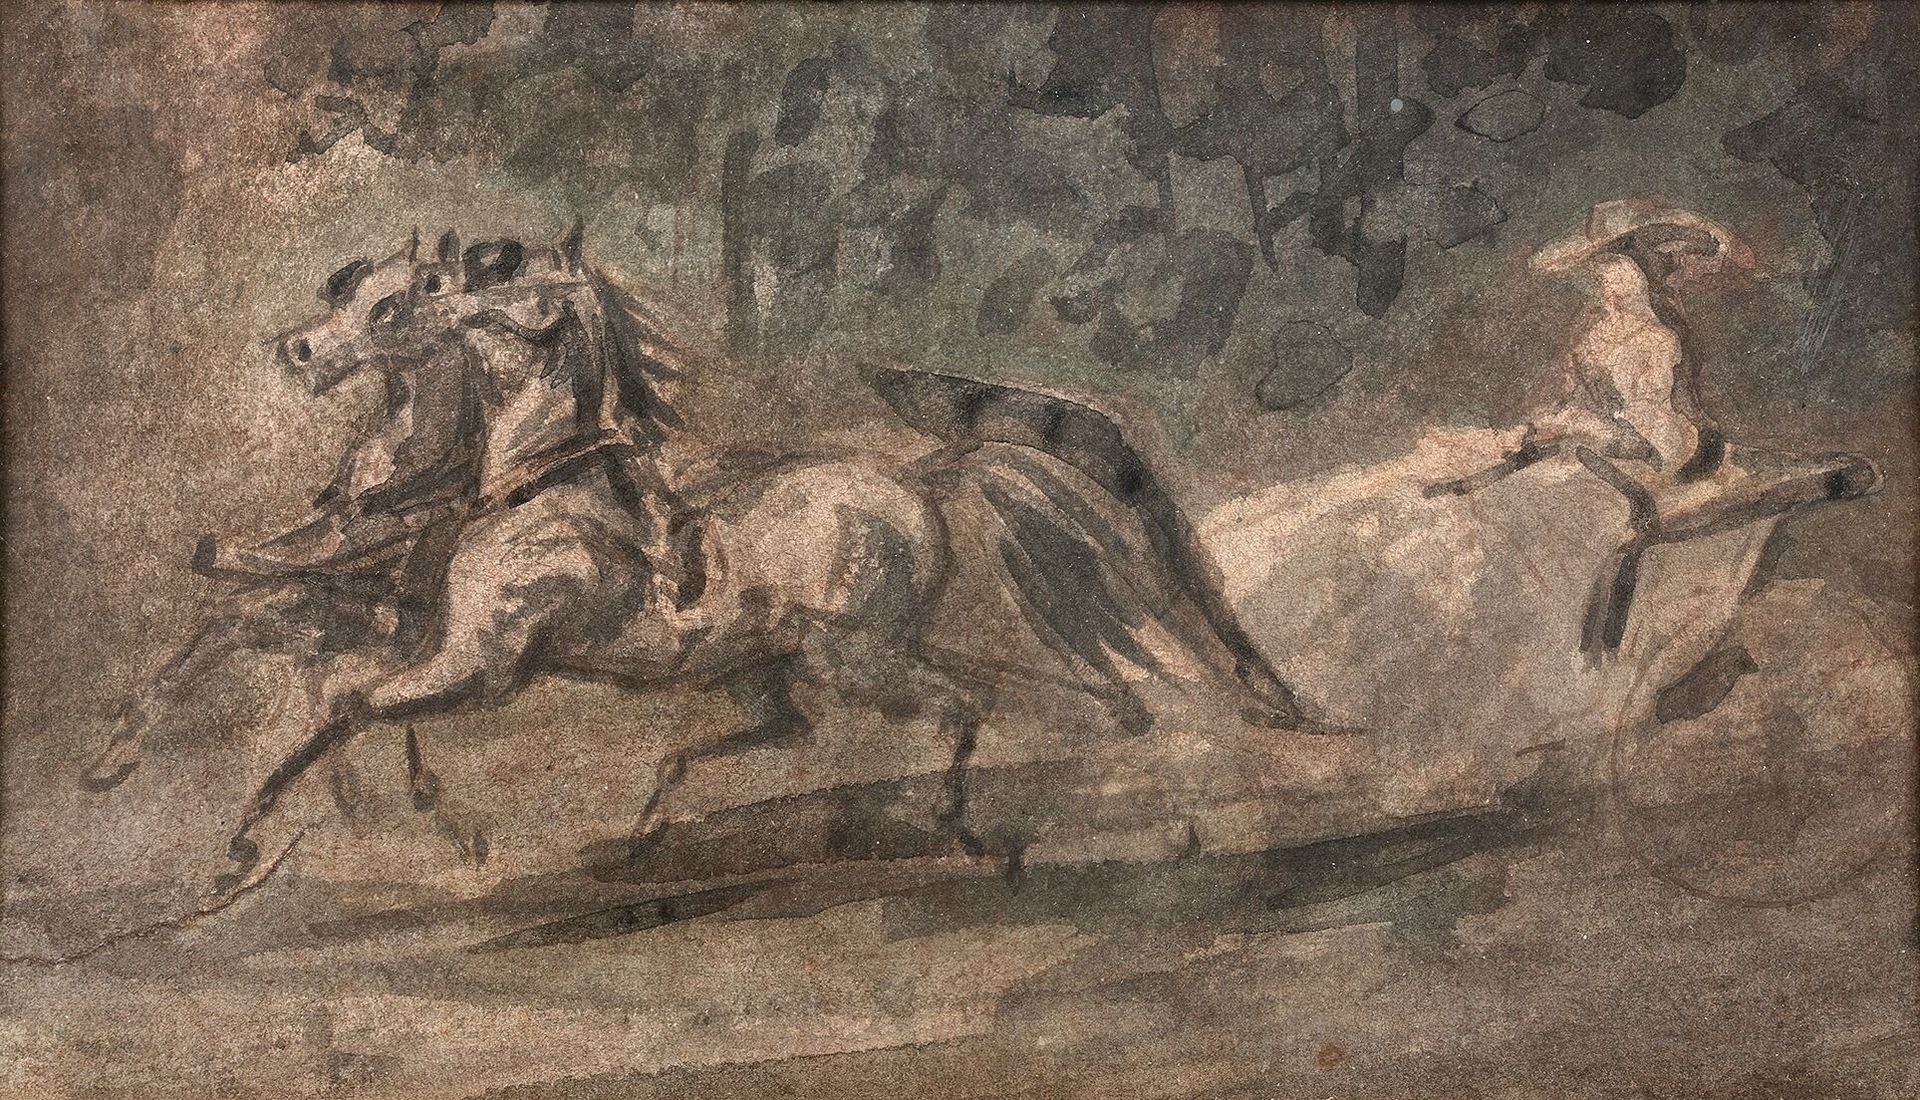 Null 康斯坦丁-盖斯(1802-1892)

马车

水墨画。

11 x 19,5 cm